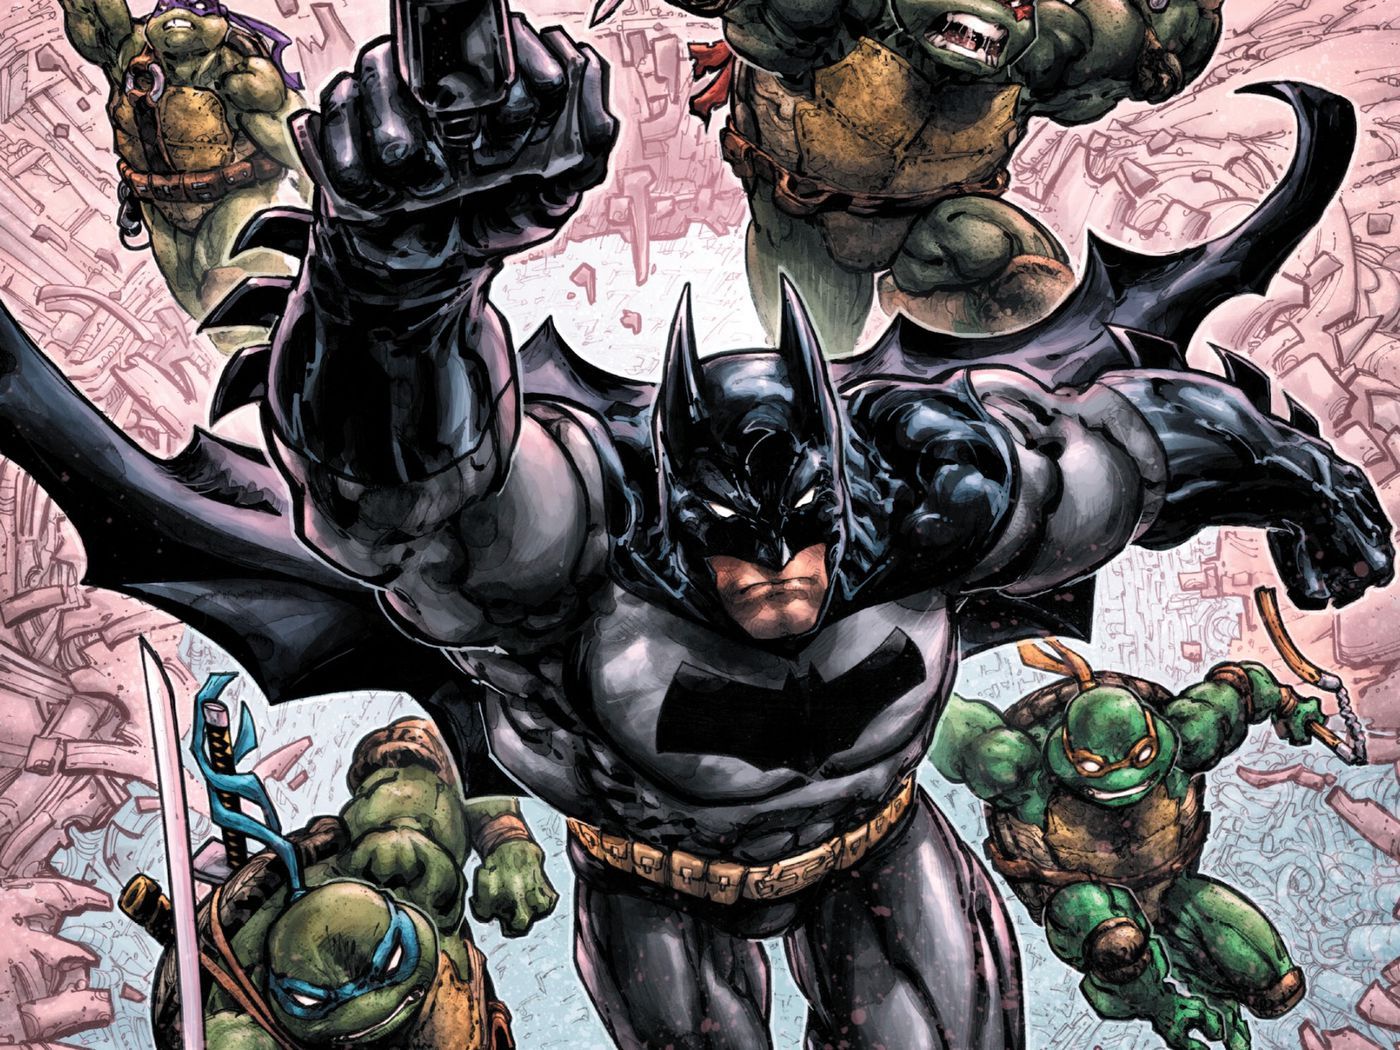 The Third Batman Ninja Turtles Crossover Has A Joker Shredder Mashup